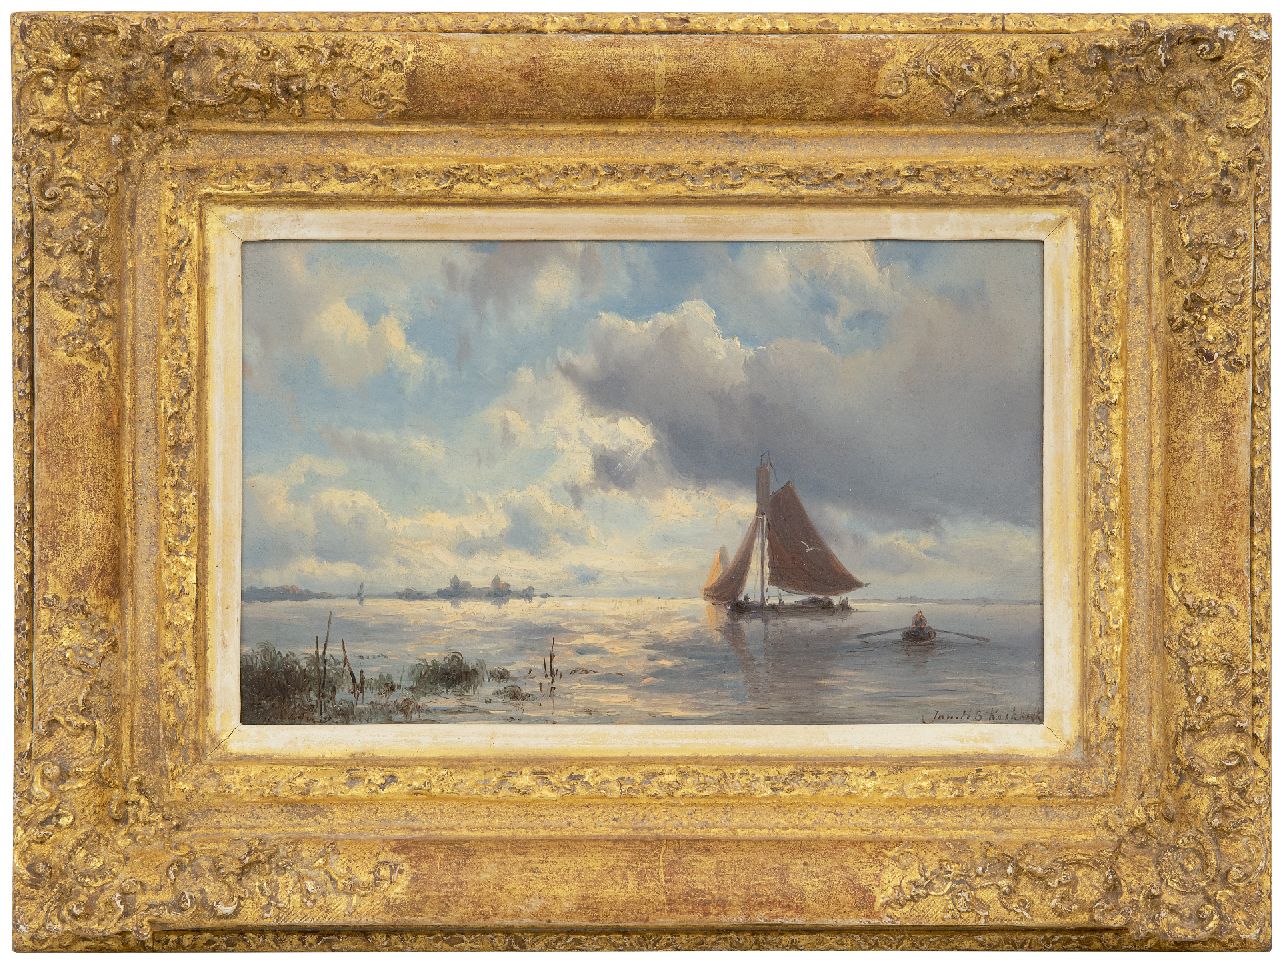 Koekkoek J.H.B.  | Johannes Hermanus Barend 'Jan H.B.' Koekkoek, Barges on a lake near the Muiderslot at fallinf dusk, oil on panel 15.6 x 24.8 cm, signed l.r. and verkocht